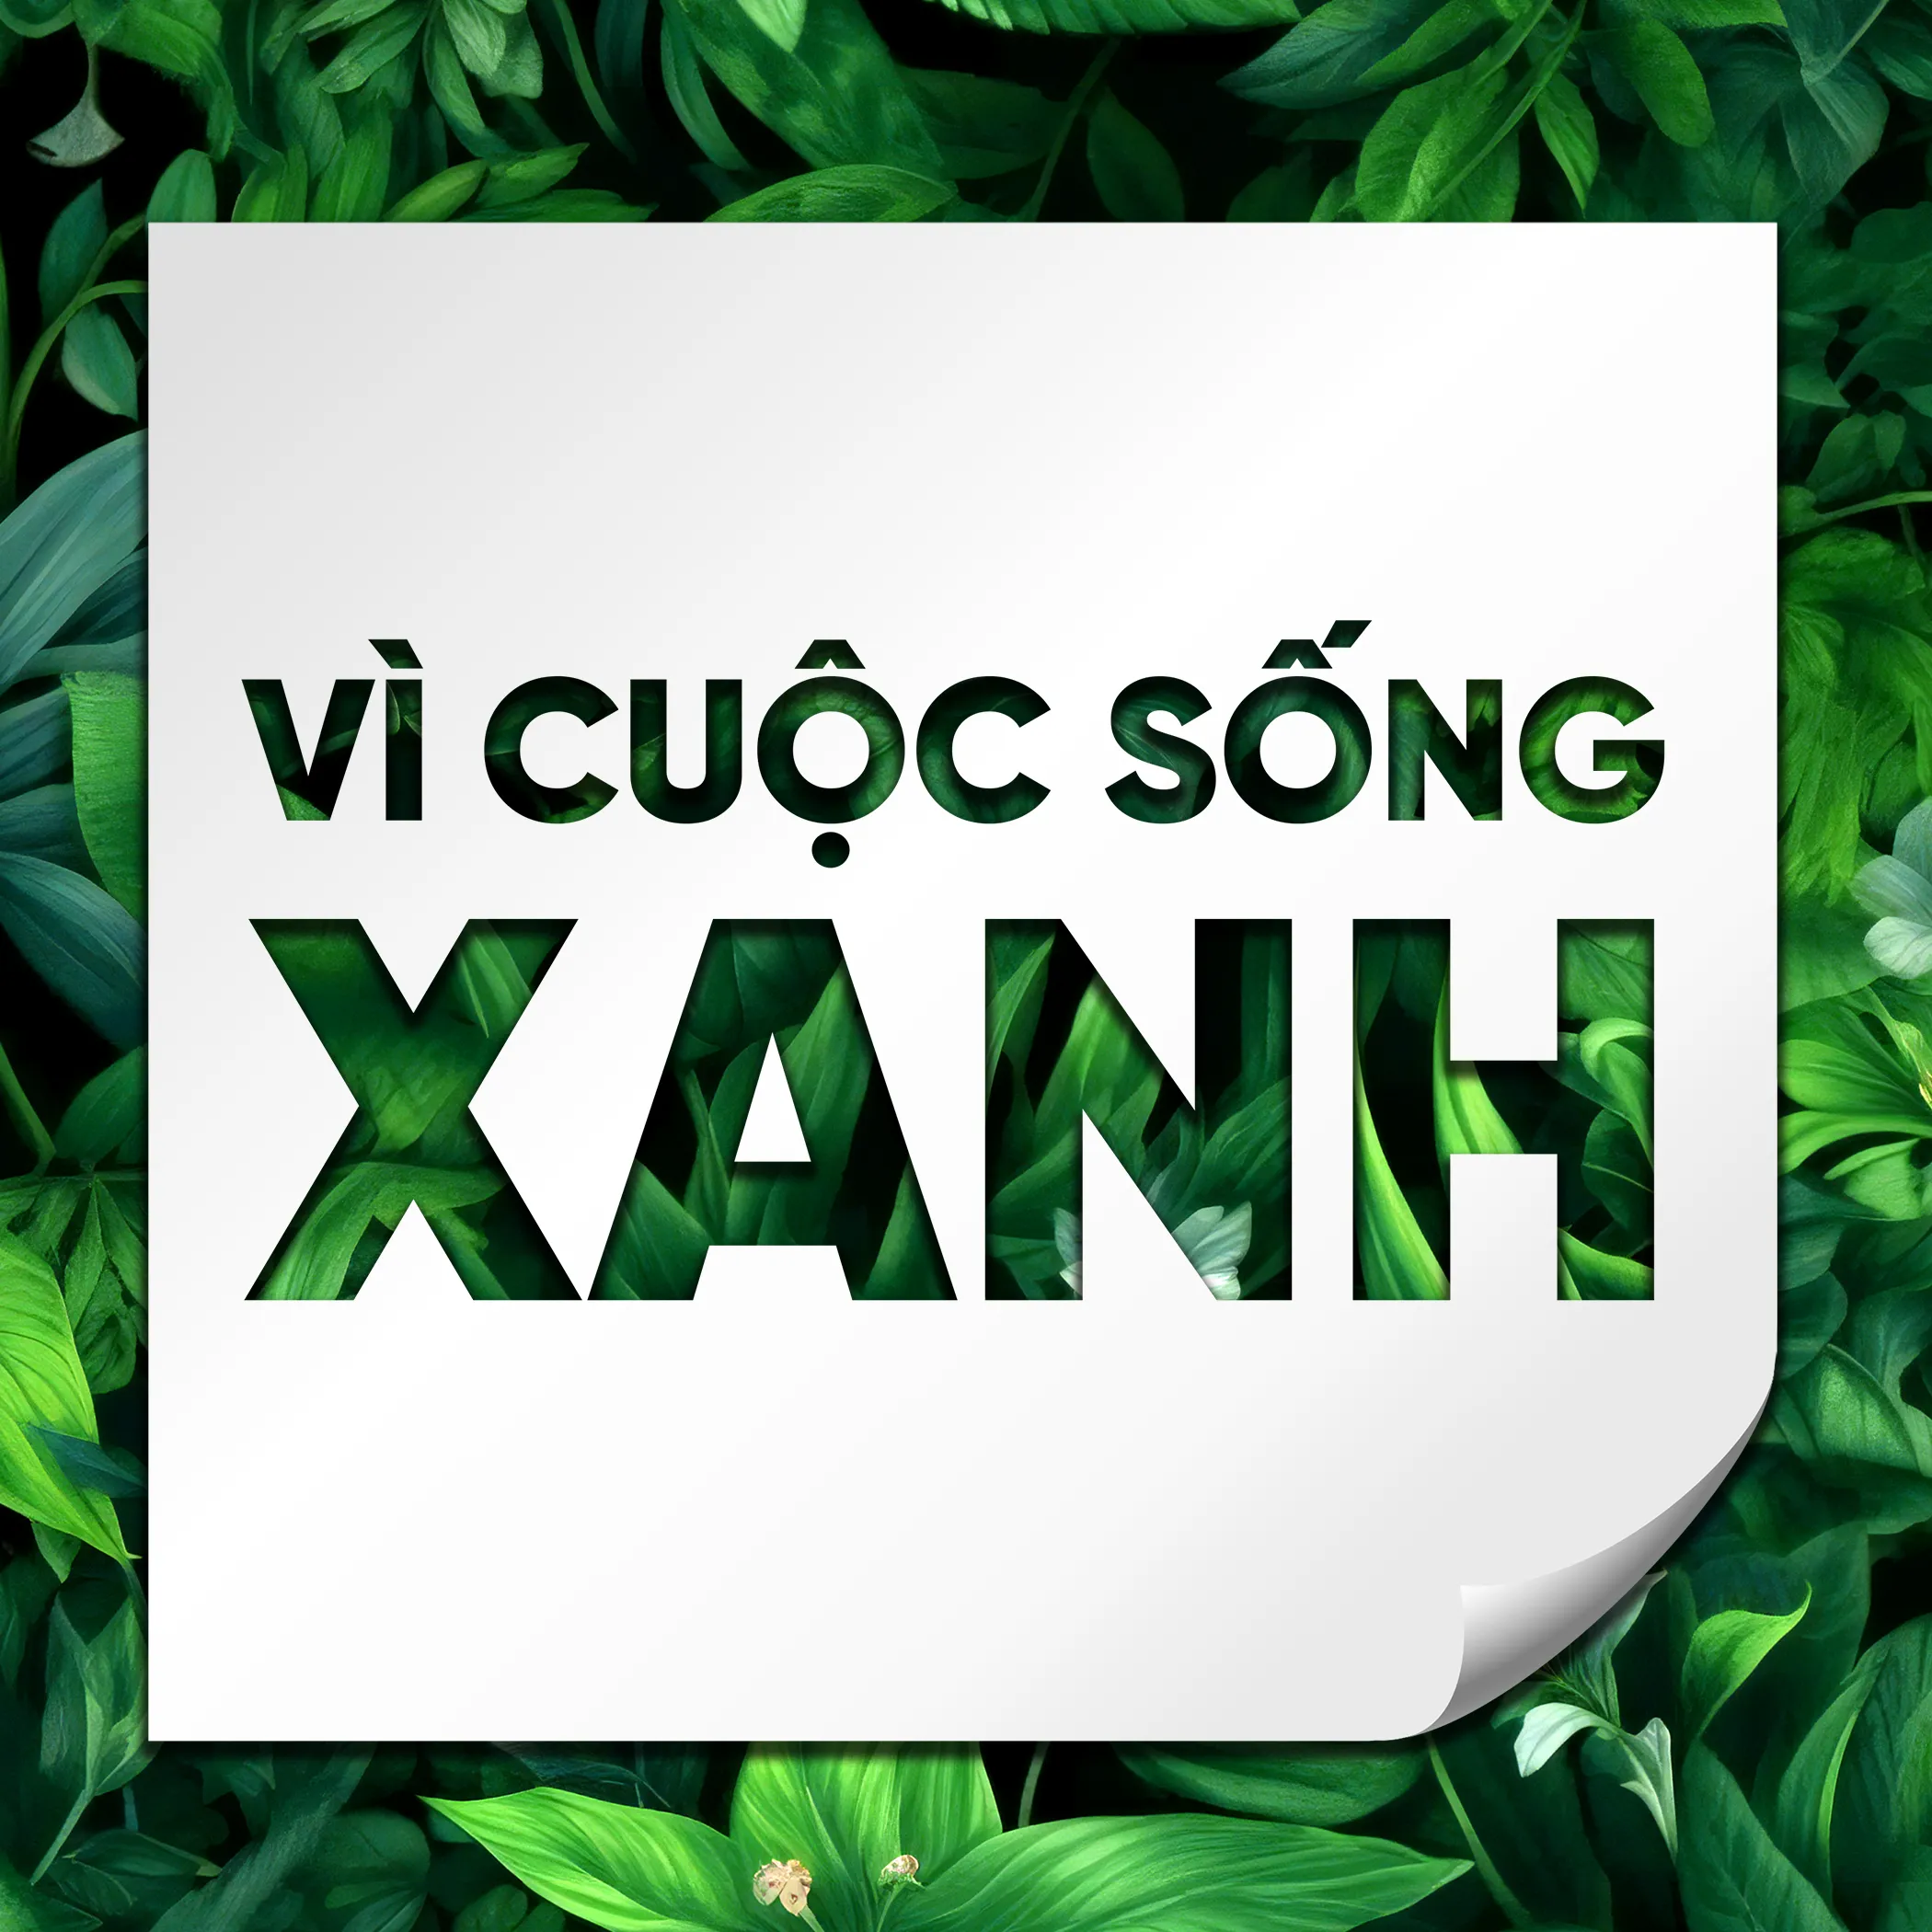 Thị trường tín chỉ carbon - Động lực xây dựng Việt Nam Xanh